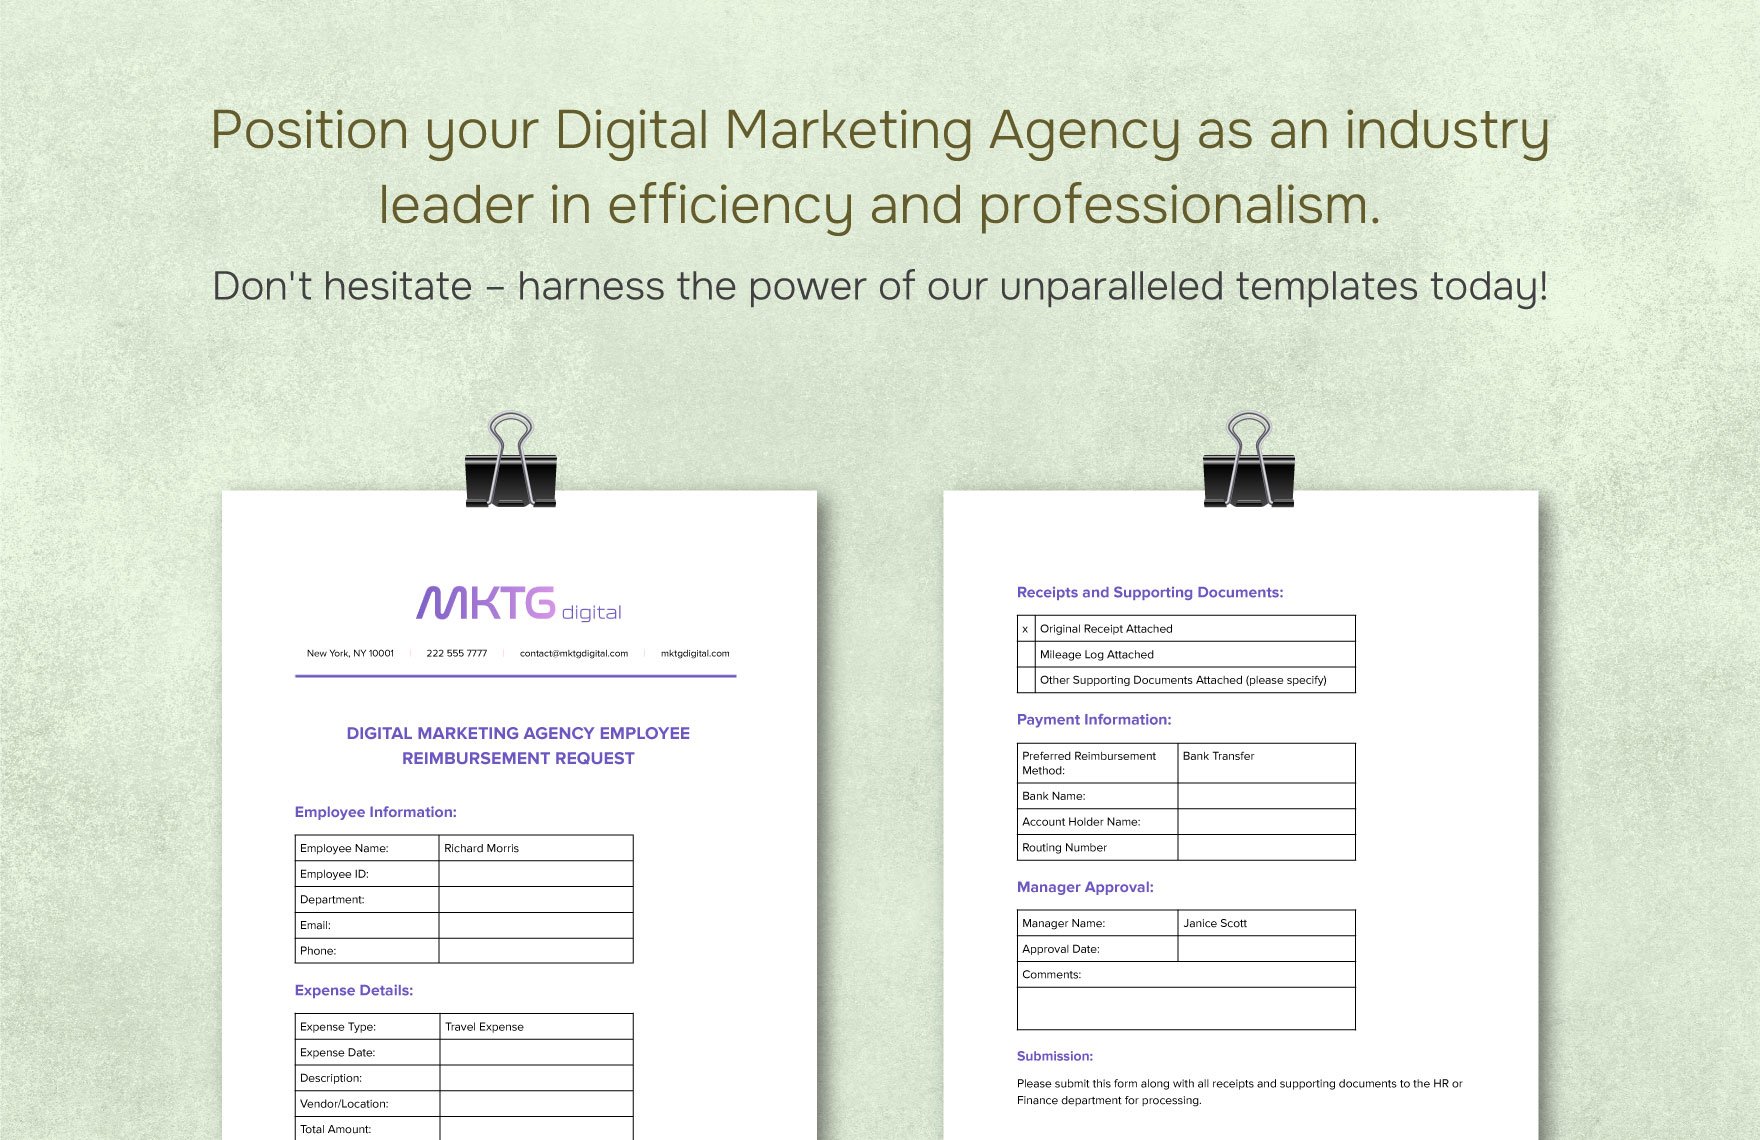 Digital Marketing Agency Employee Reimbursement Request Template